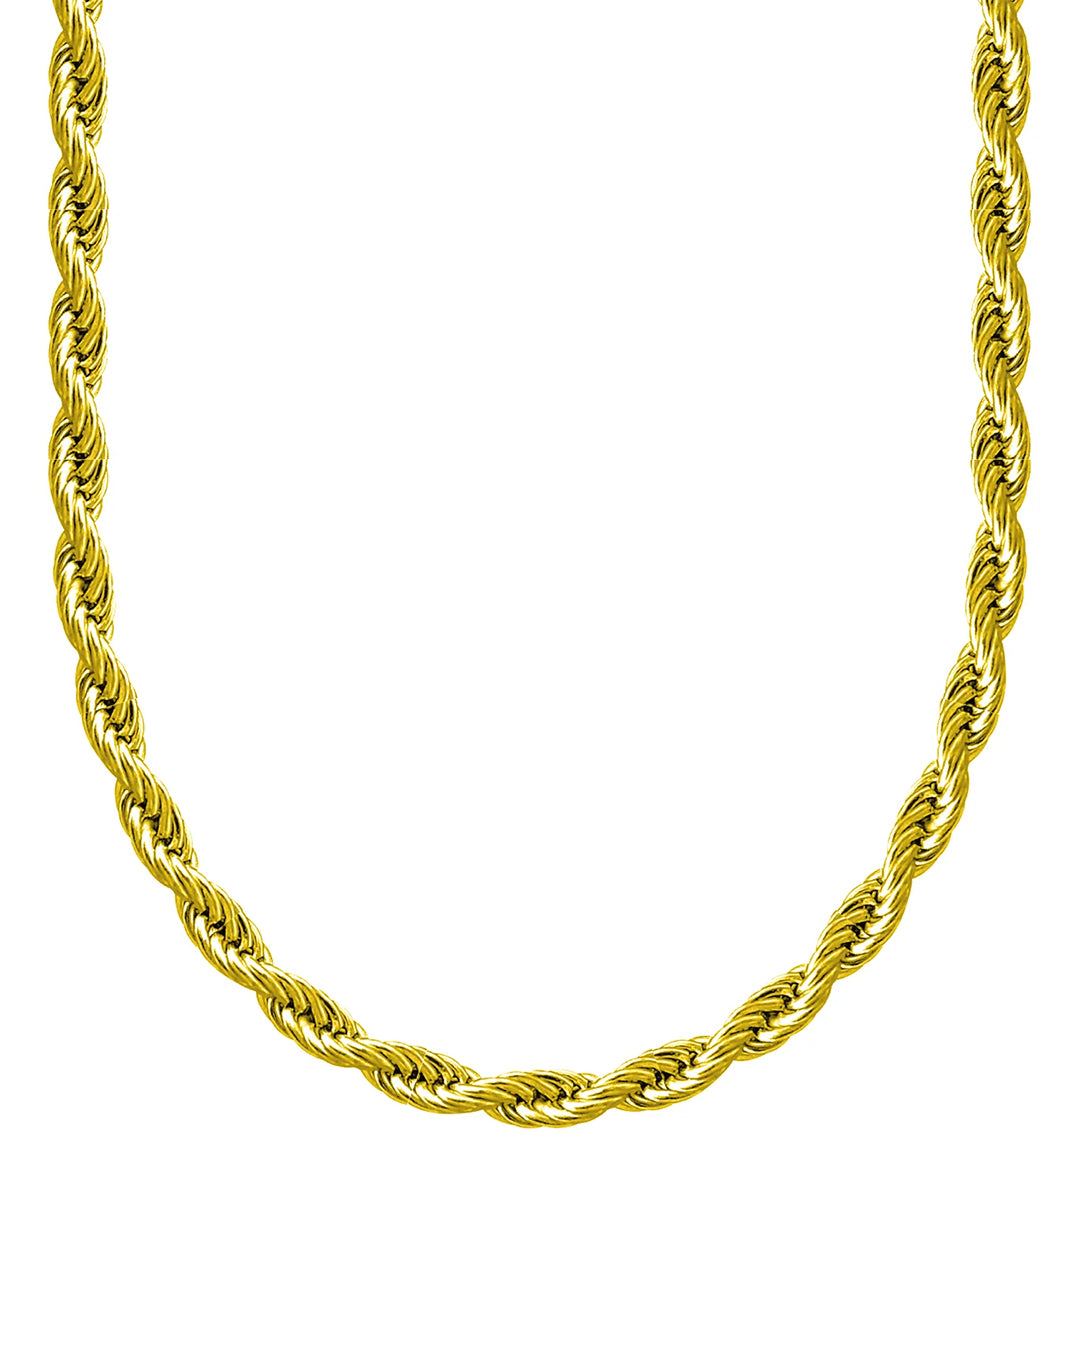 Rope Chain 5mm (Oro)